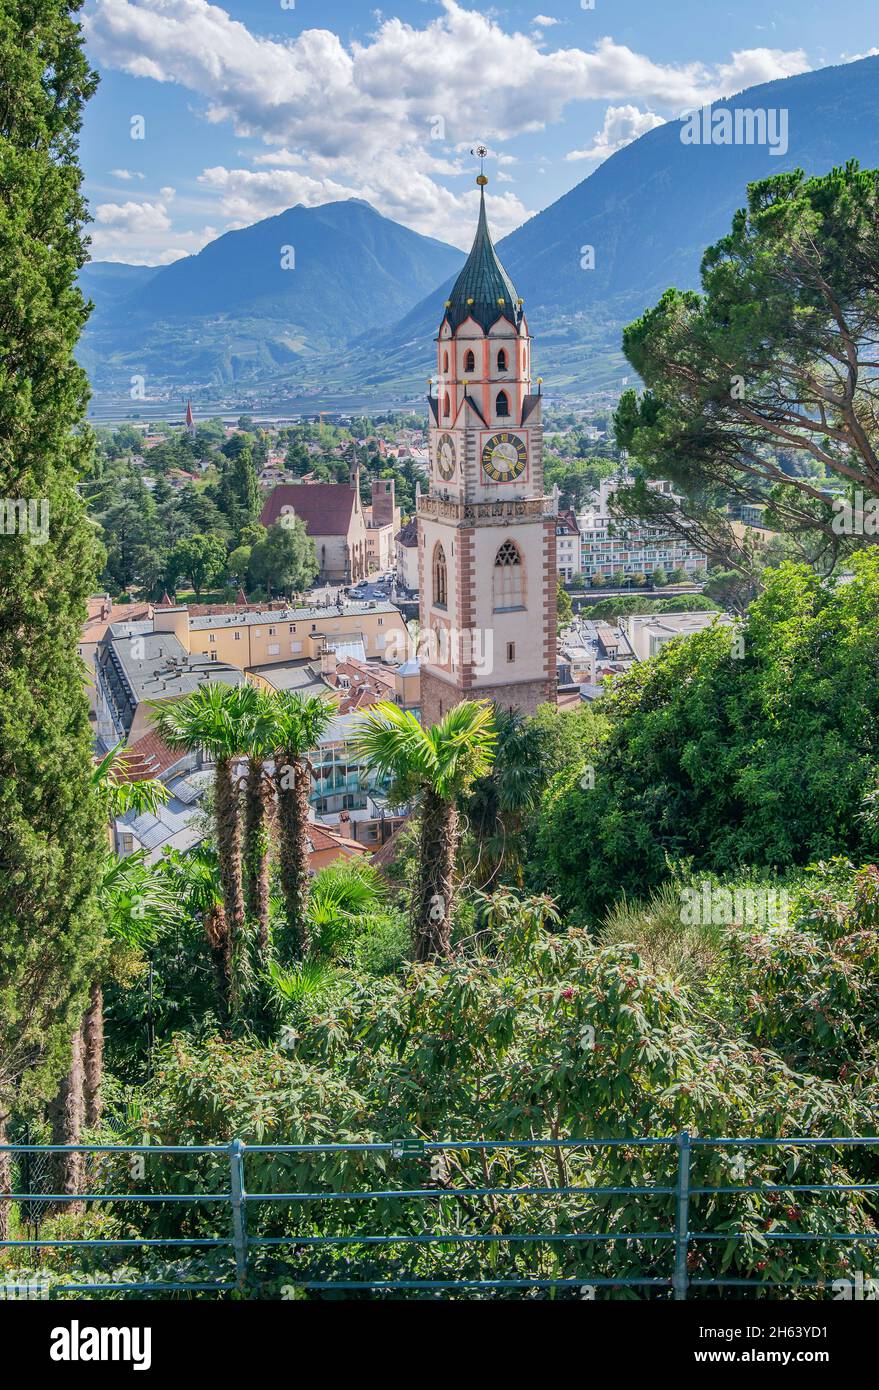 vue sur le centre-ville avec l'église paroissiale de st nikolaus de la tappeinerpromenade,merano,etschtal,burggrafenamt,tyrol du sud,province de bolzano,trentin-haut-adige,italie Banque D'Images